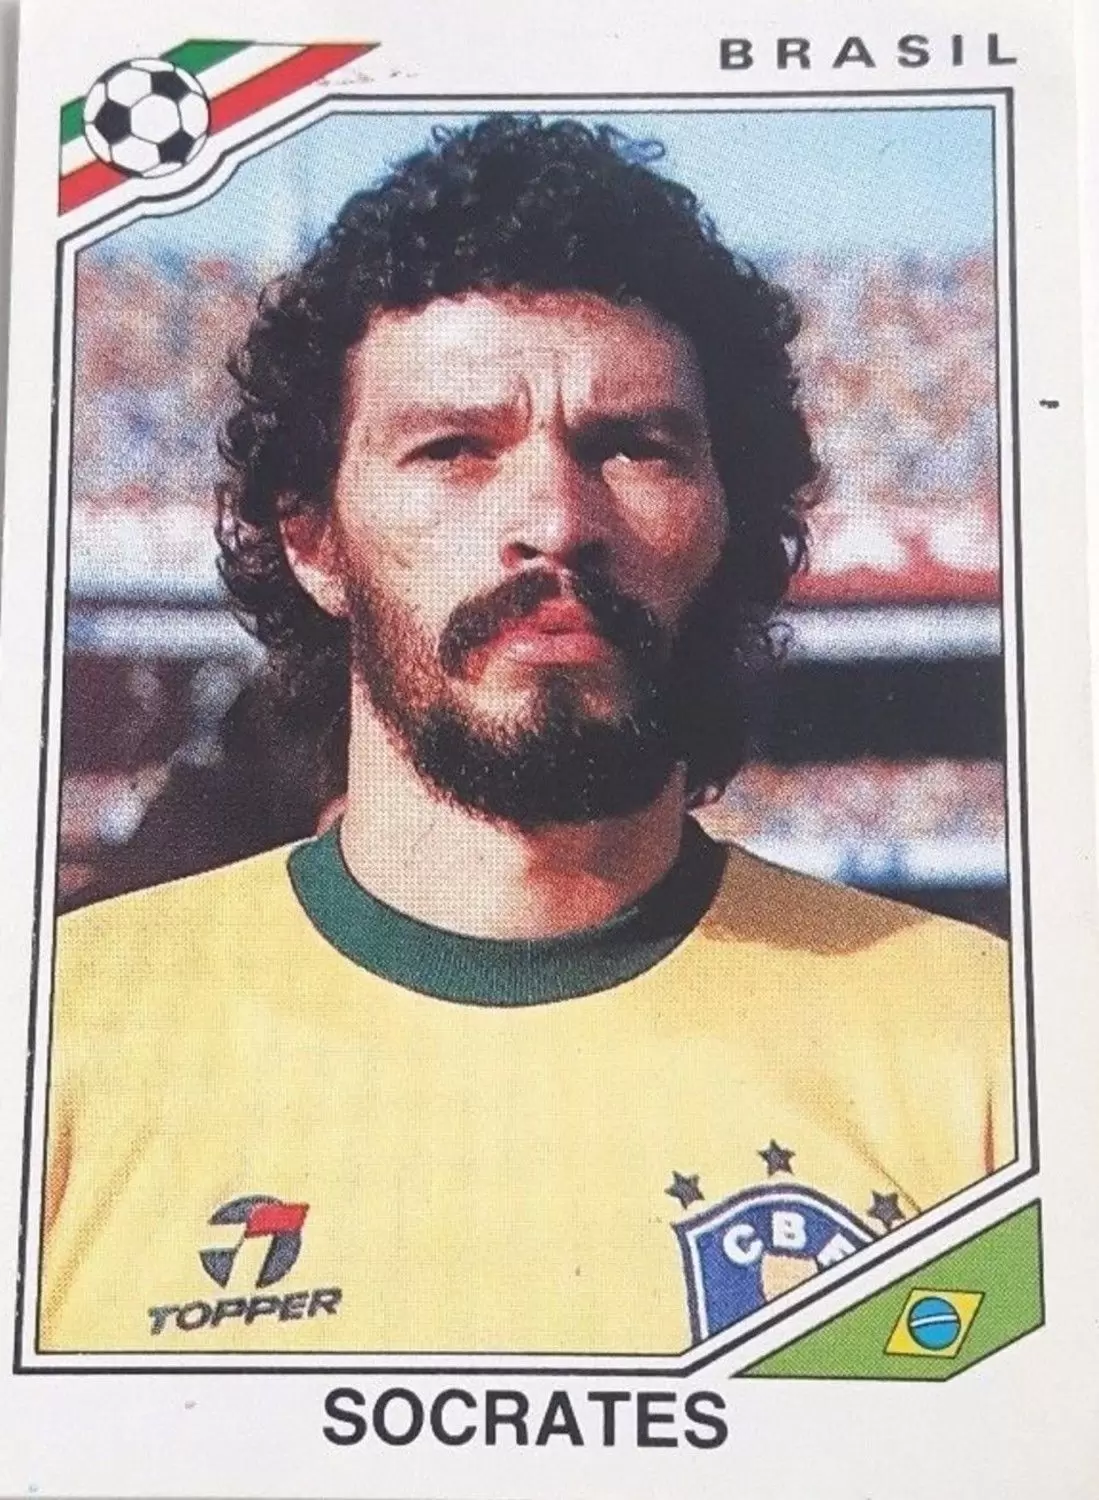 Mexico 86 World Cup - Socrates B.s. De Souza Vieira De Oliveira - Brésil